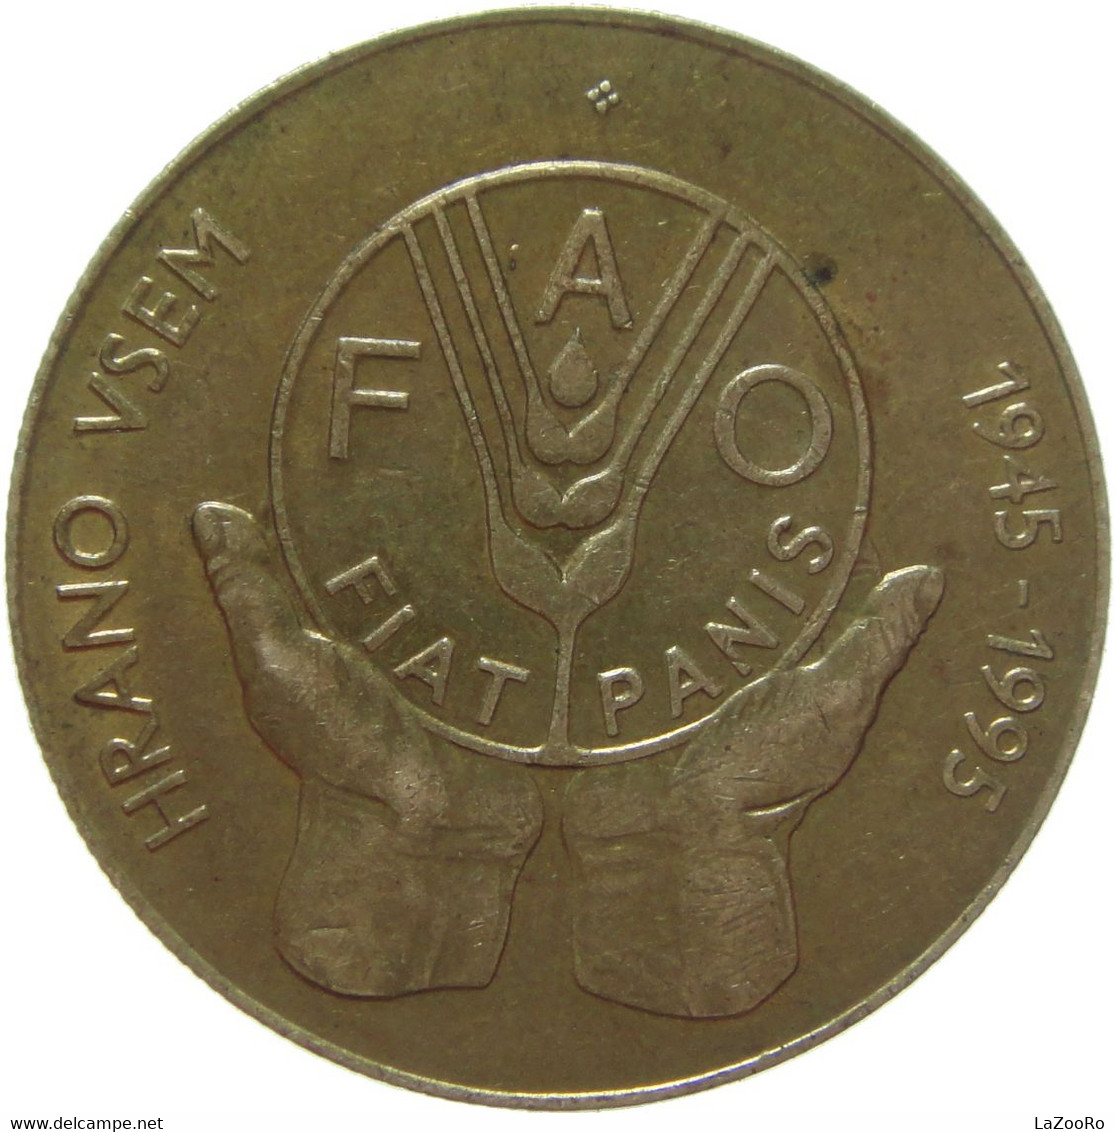 LaZooRo: Slovenia 5 Tolarjev 1995 XF / UNC FAO - Slowenien